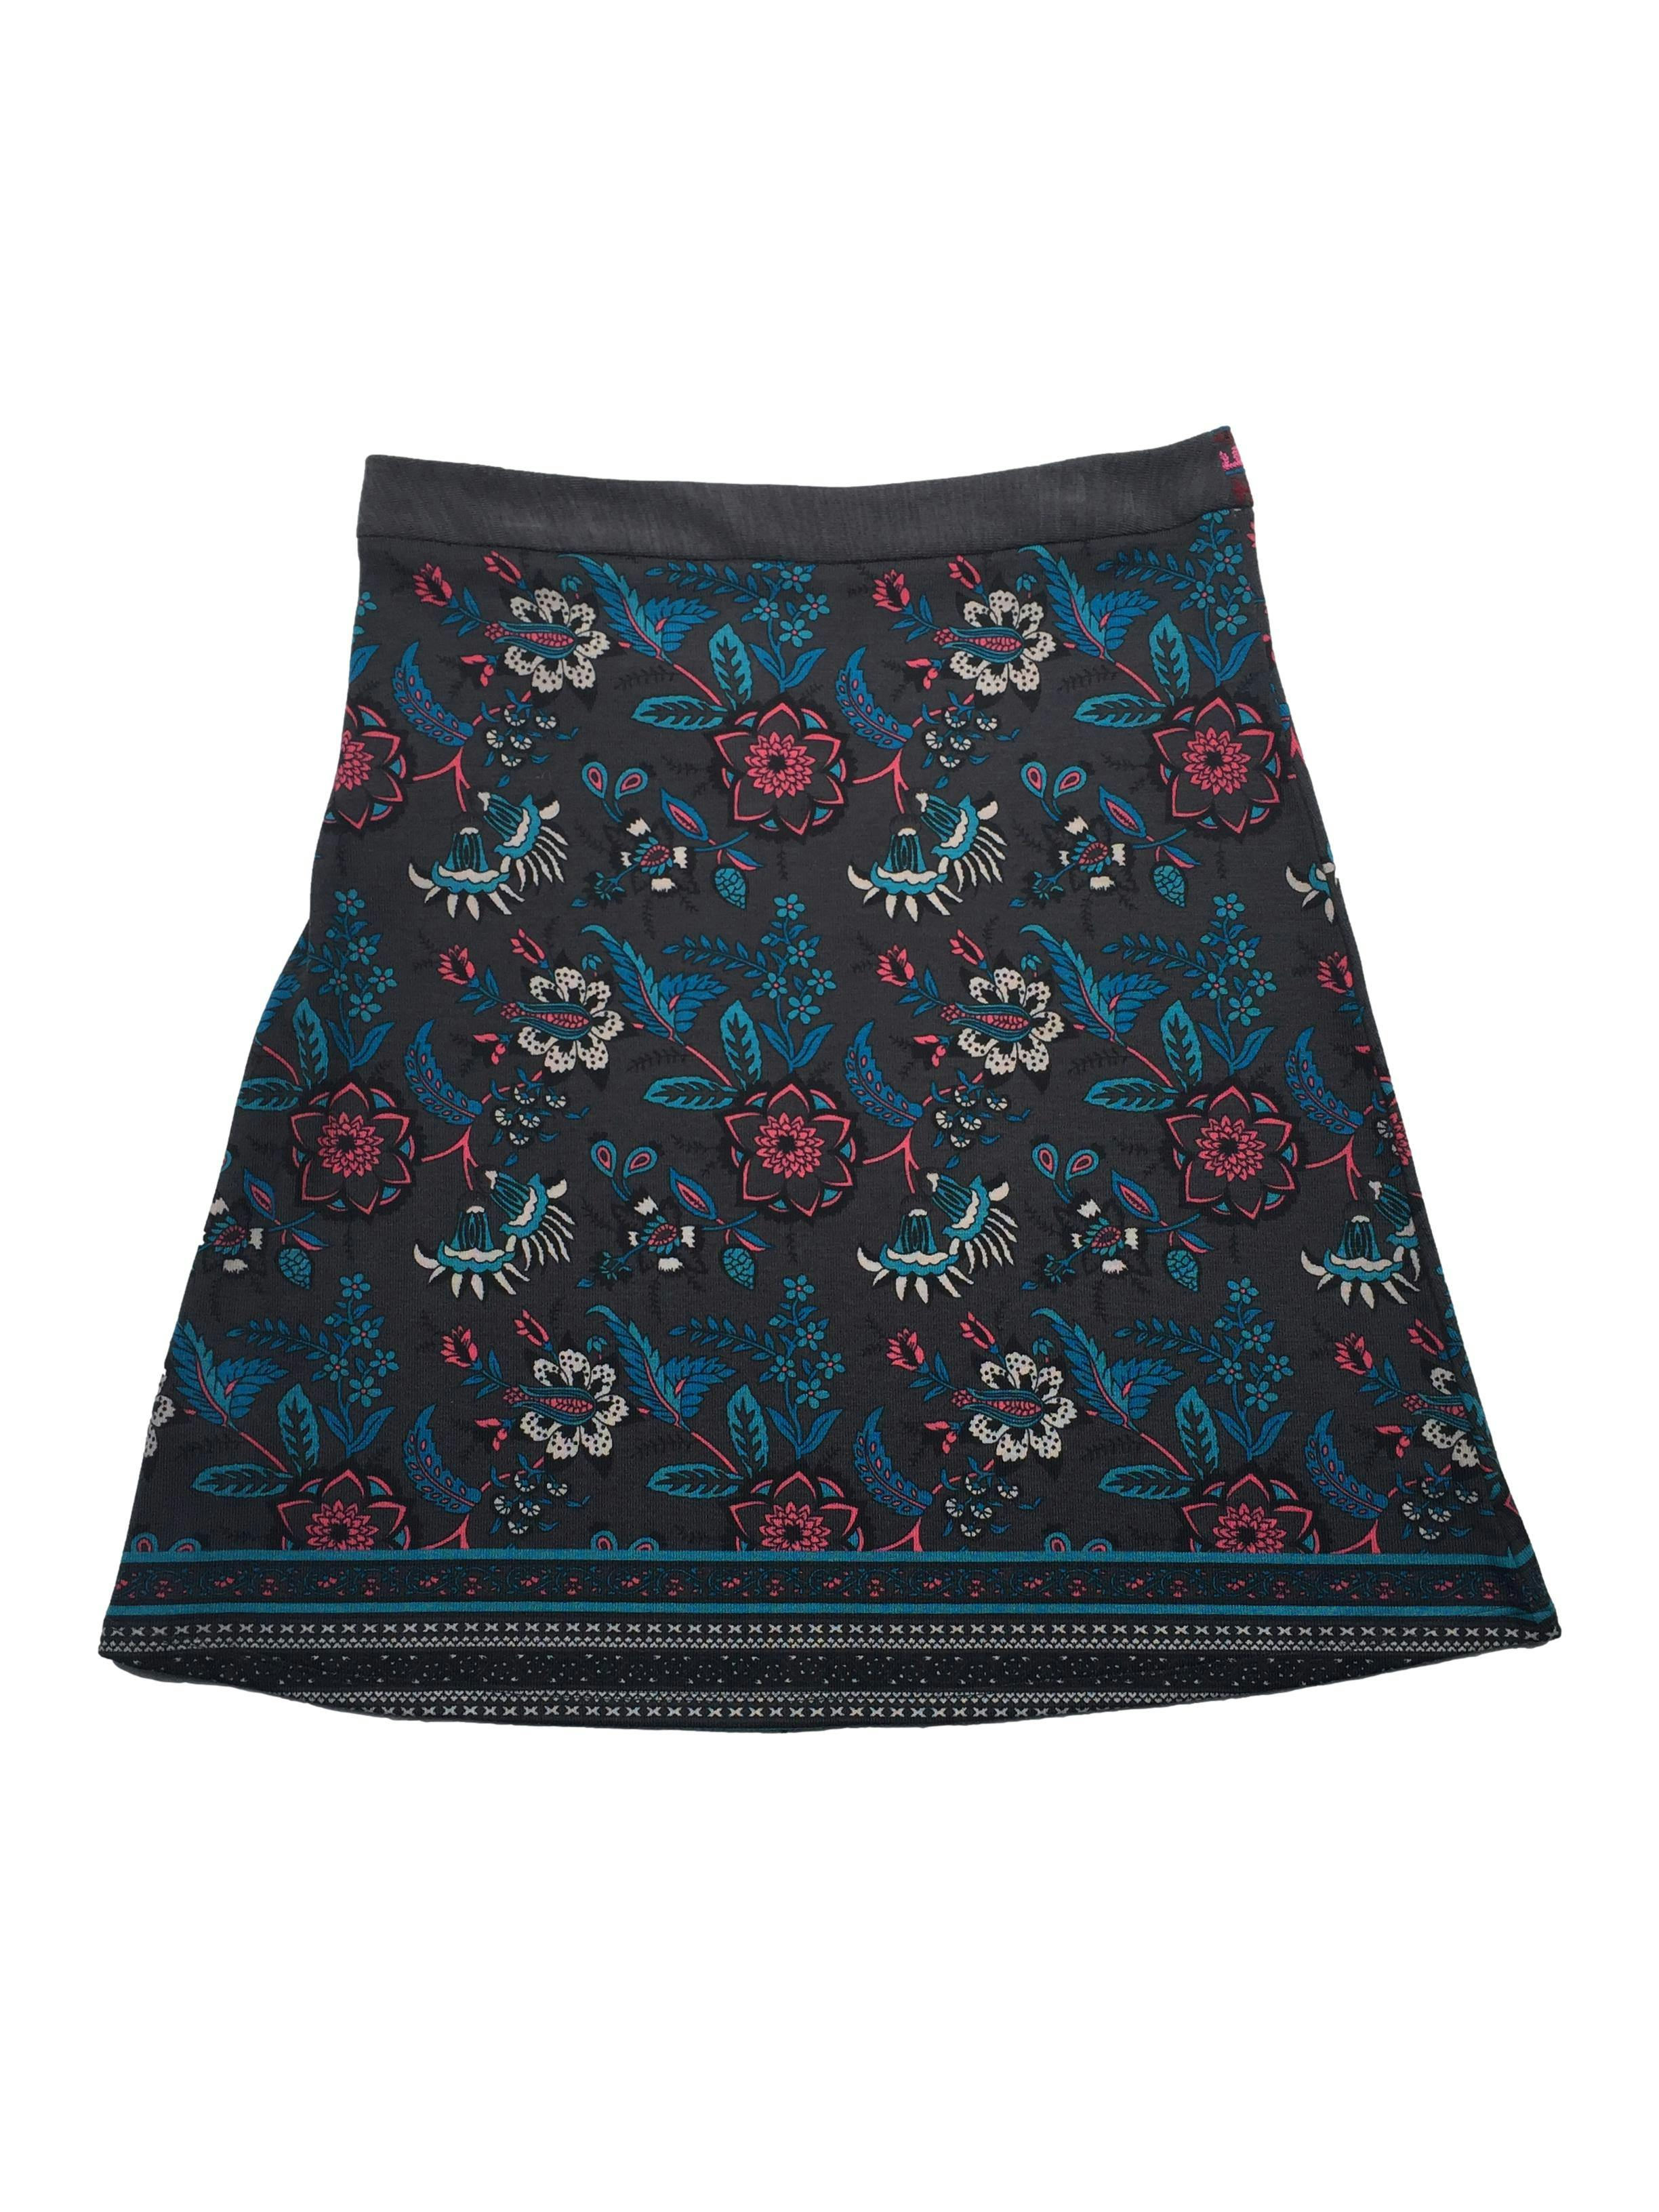 Falda knit Tatienne ploma con estampado floral y bordado en pretina, cierre lateral invisible. Nuevo con etiqueta. Cintura 82cm, Largo 60cm.